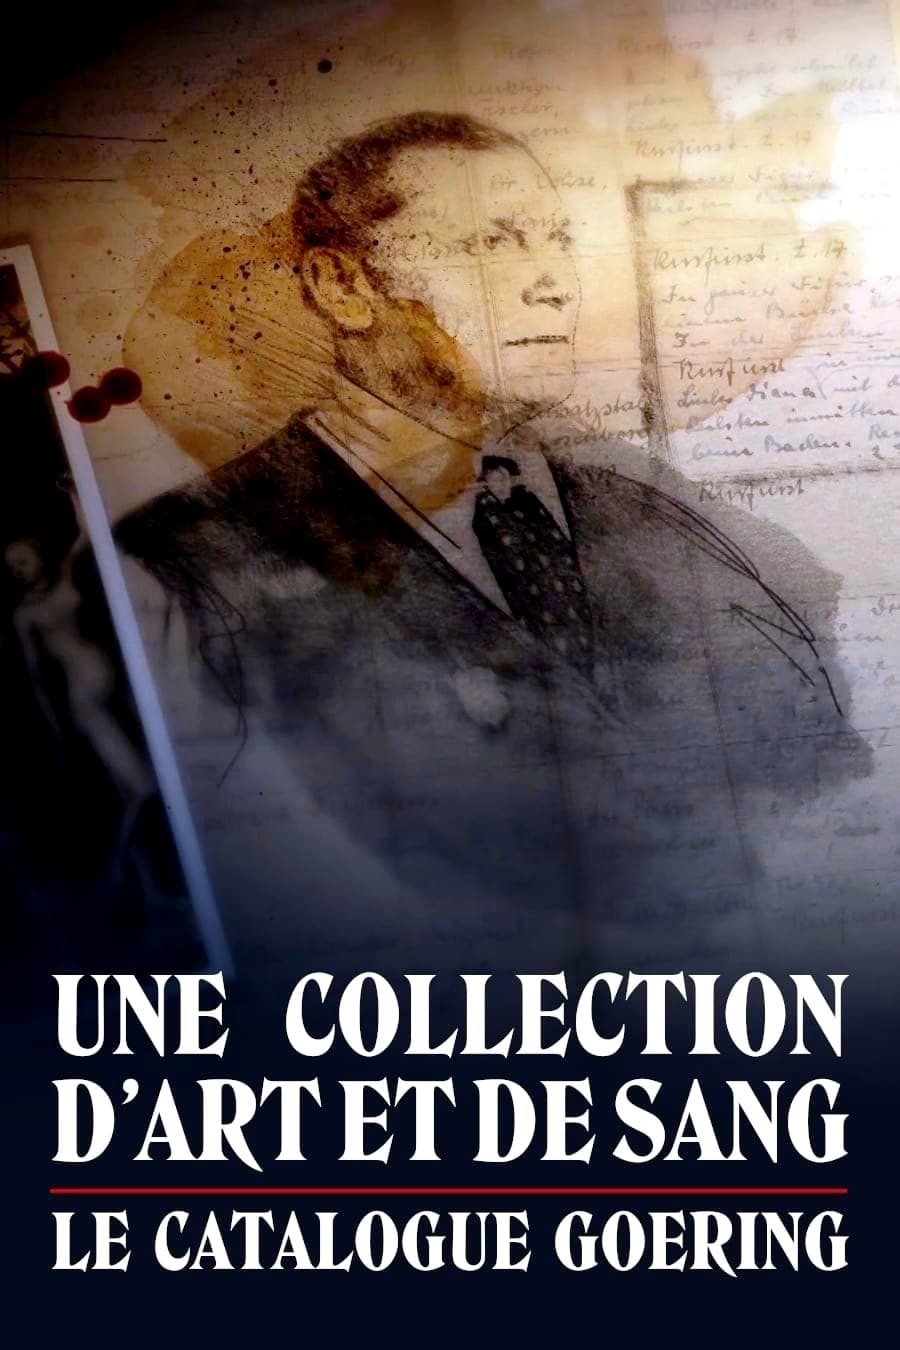 Goeringov katalog / Une collection d'art et de sang - Le catalogue Goering  (2020)(SK)[TvRip] = CSFD 65%